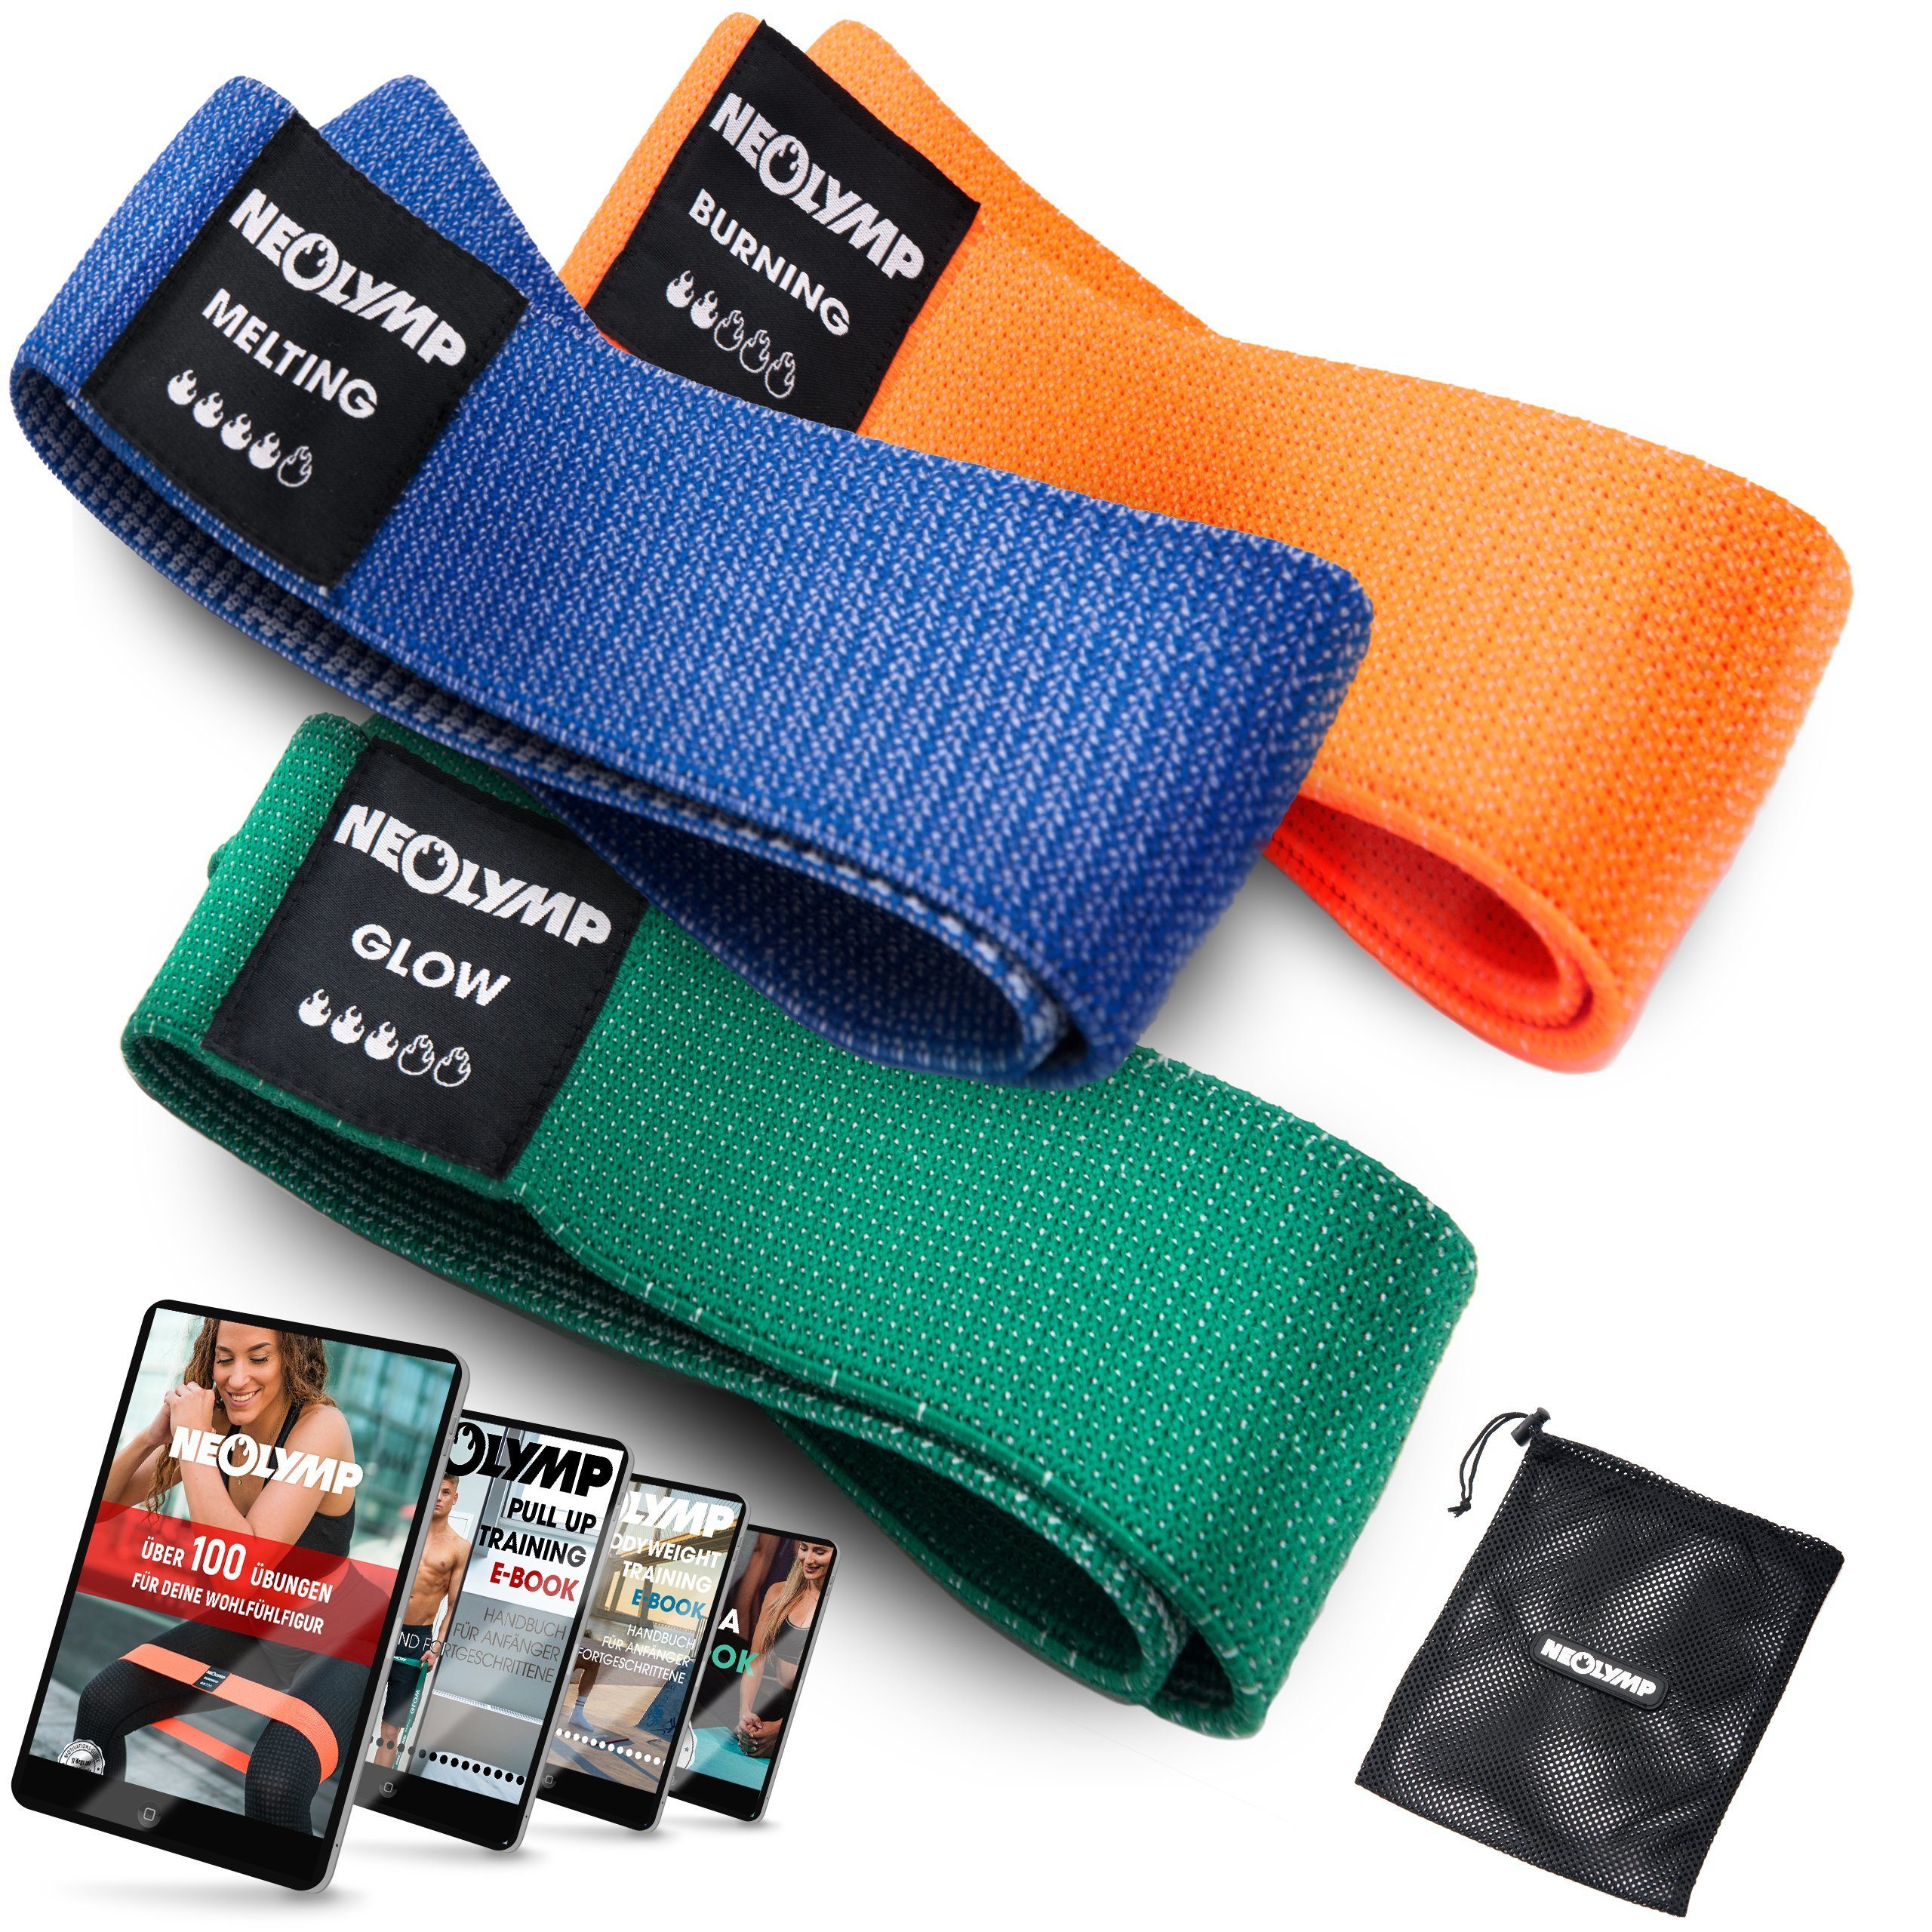 NEOLYMP Trainingsband Premium MinibänderI Fitnessbänder Bauch Beine PoI Trainingsband IMB310, Naturfasern, komfortabel, mit E-Book, langlebig, hygienisch, waschbar 3er-Set | Fitnessbänder